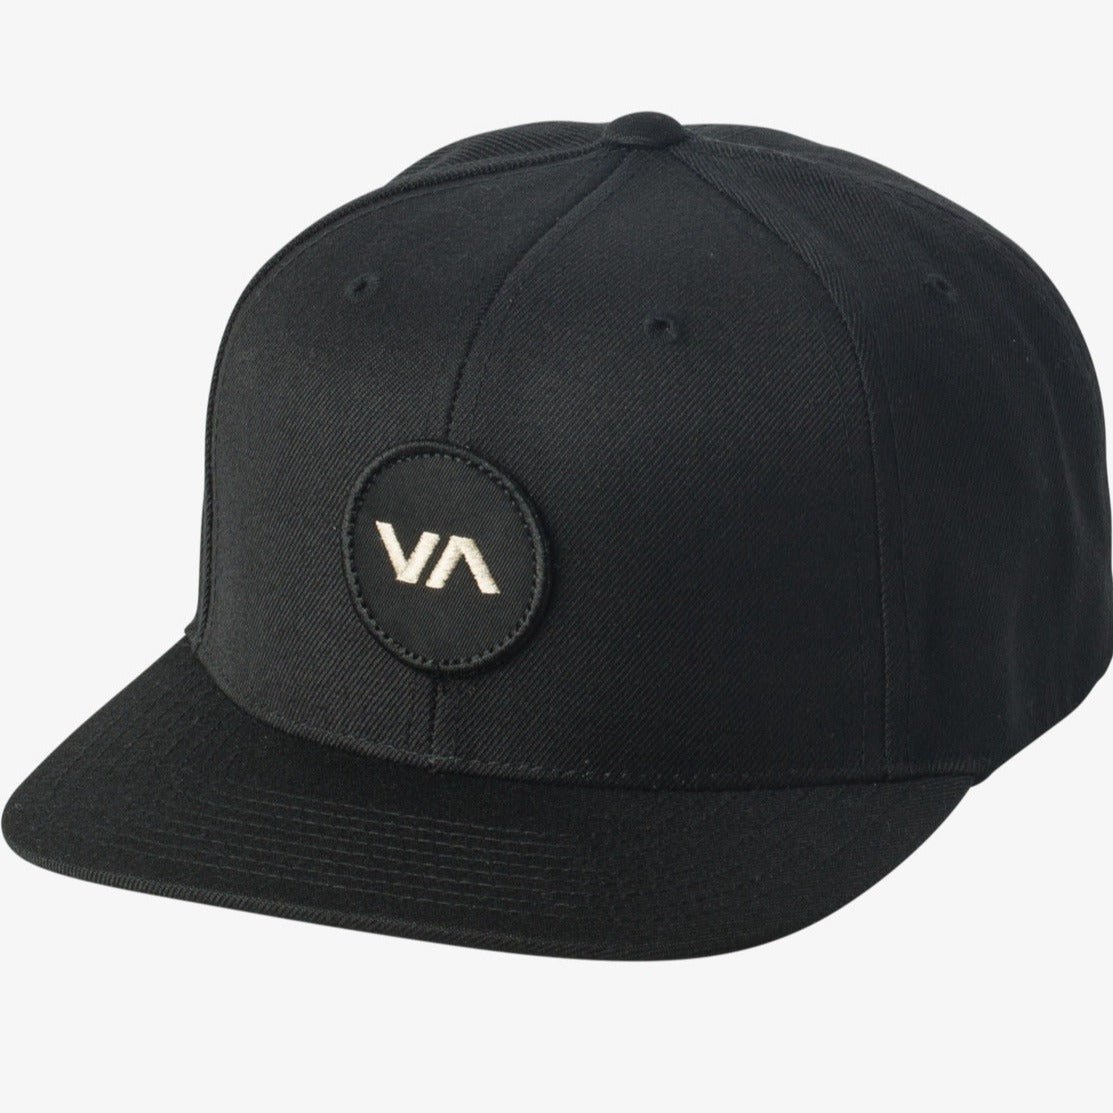 RVCA VA Patch Snapback Hat Black Men's Hats RVCA 